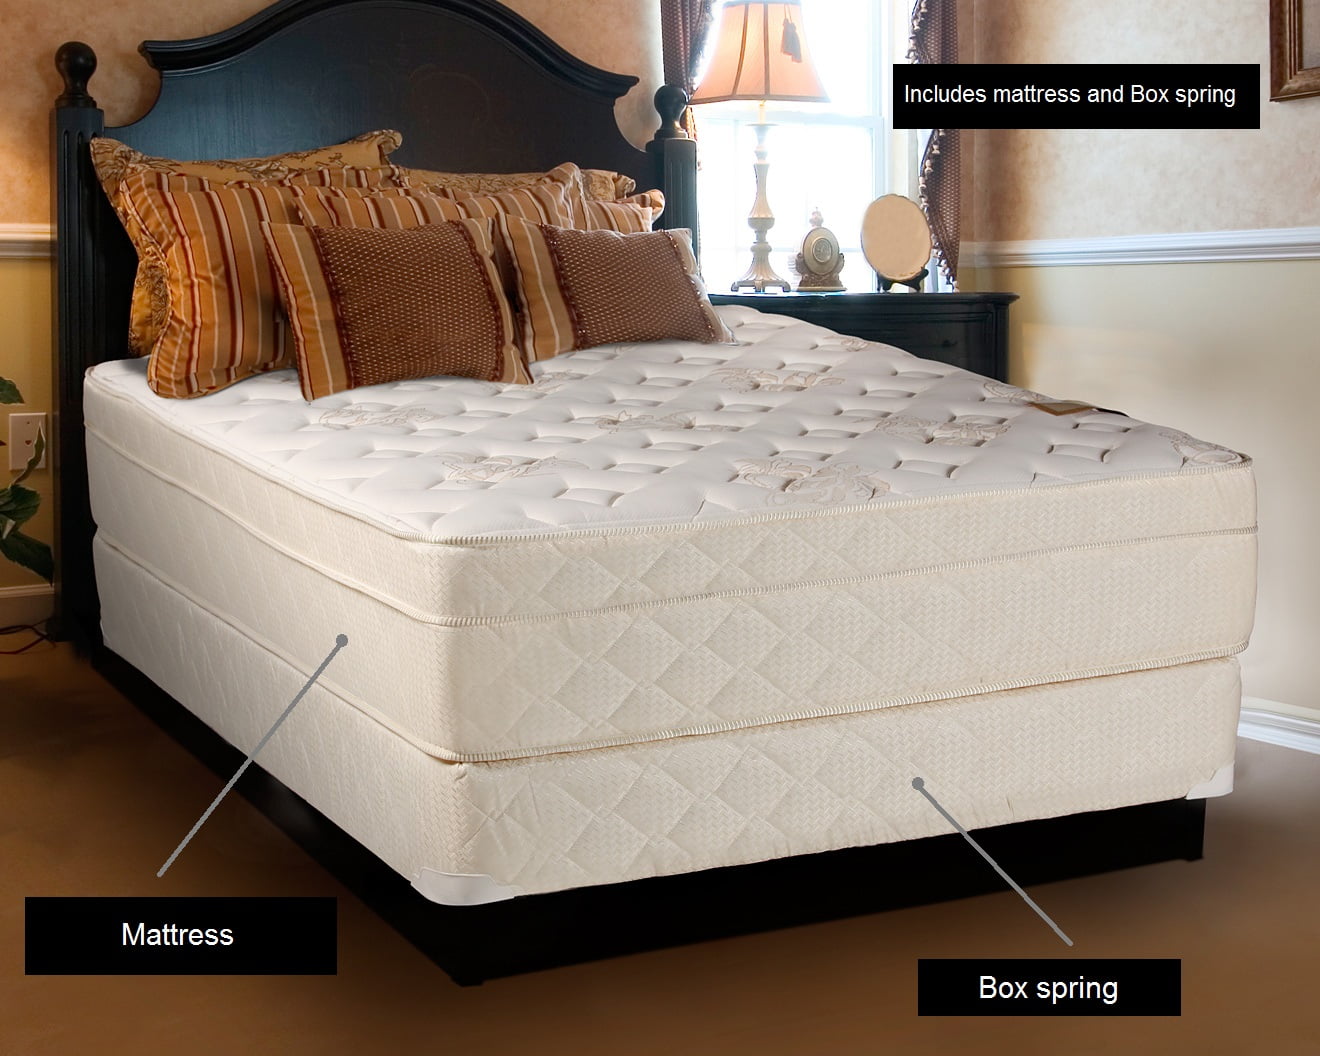 queen size medium.mattress and bix.apeing.set